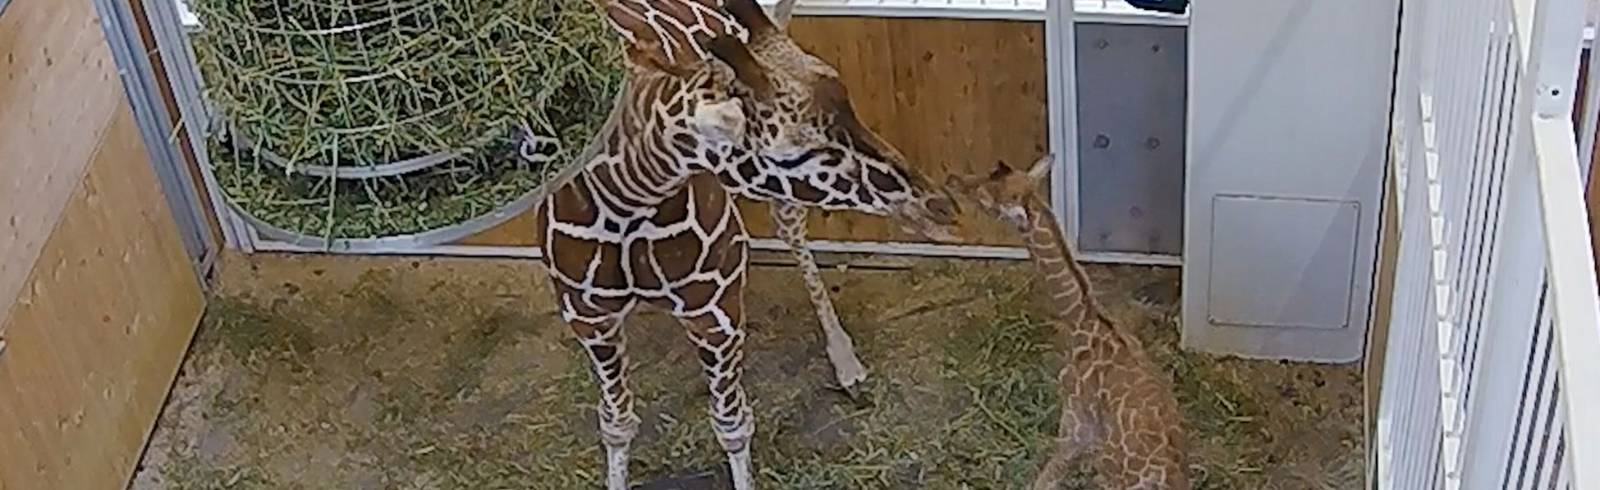 Giraffenmutter nimmt Baby nur zögerlich an